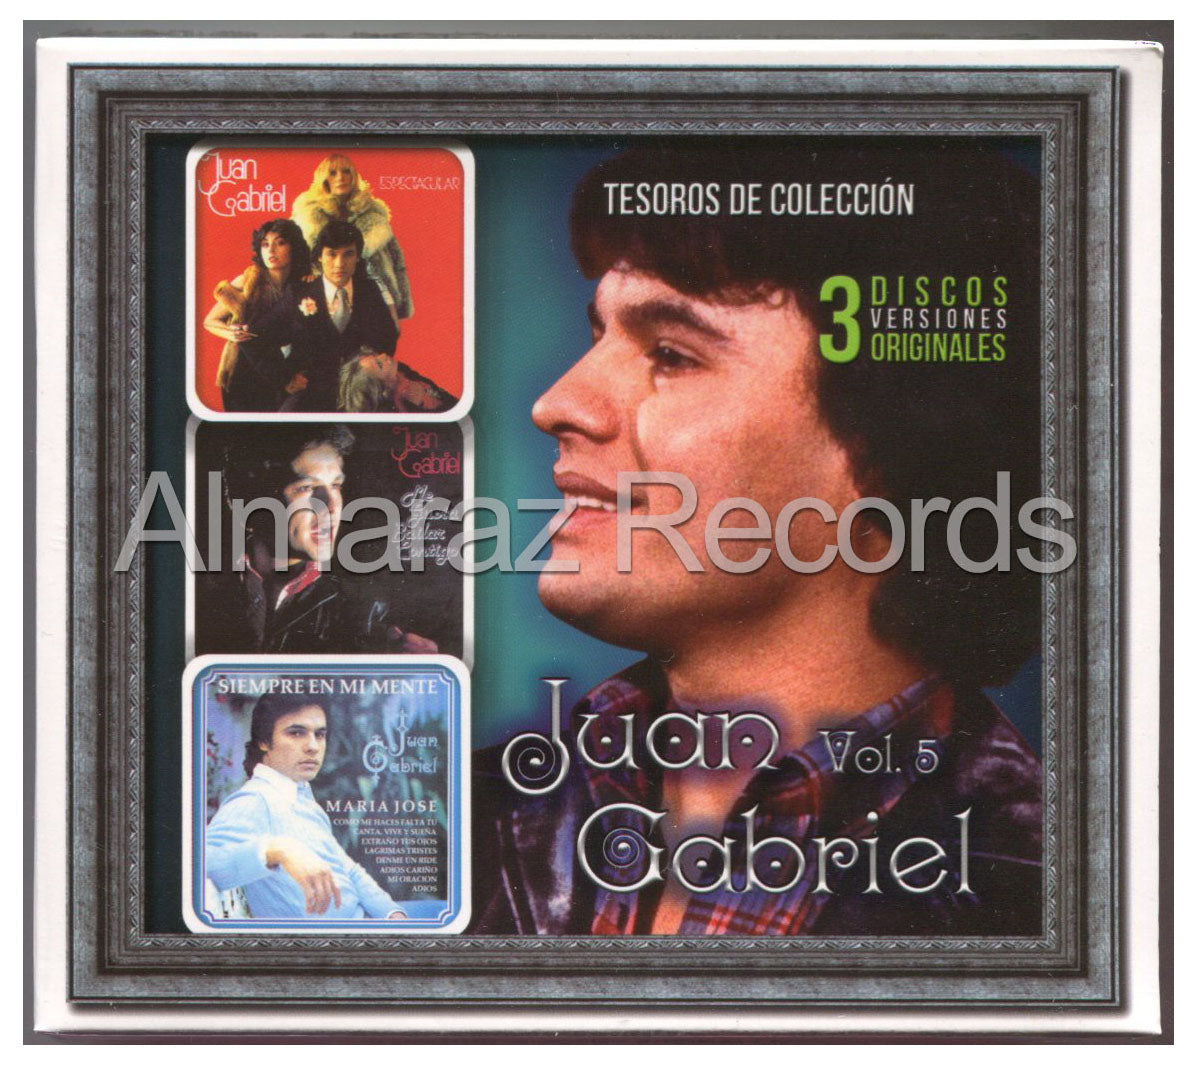 Juan Gabriel Tesoros De Coleccion Vol. 5 3CD